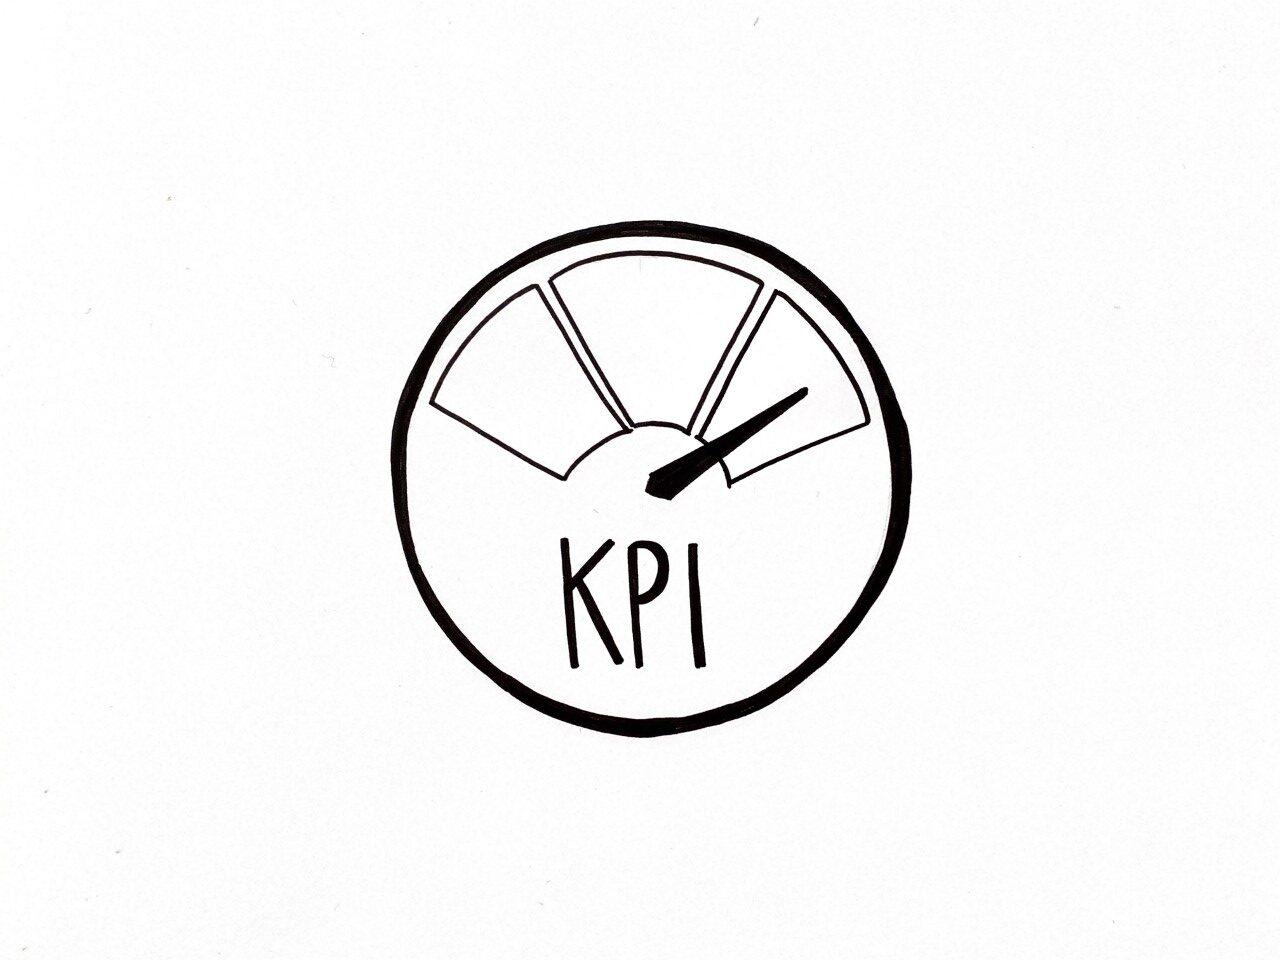 Rundes Messgerät mit einer Nadel, die nach rechts ausschlägt als Symbol für KPI Steuerungskennzahlen